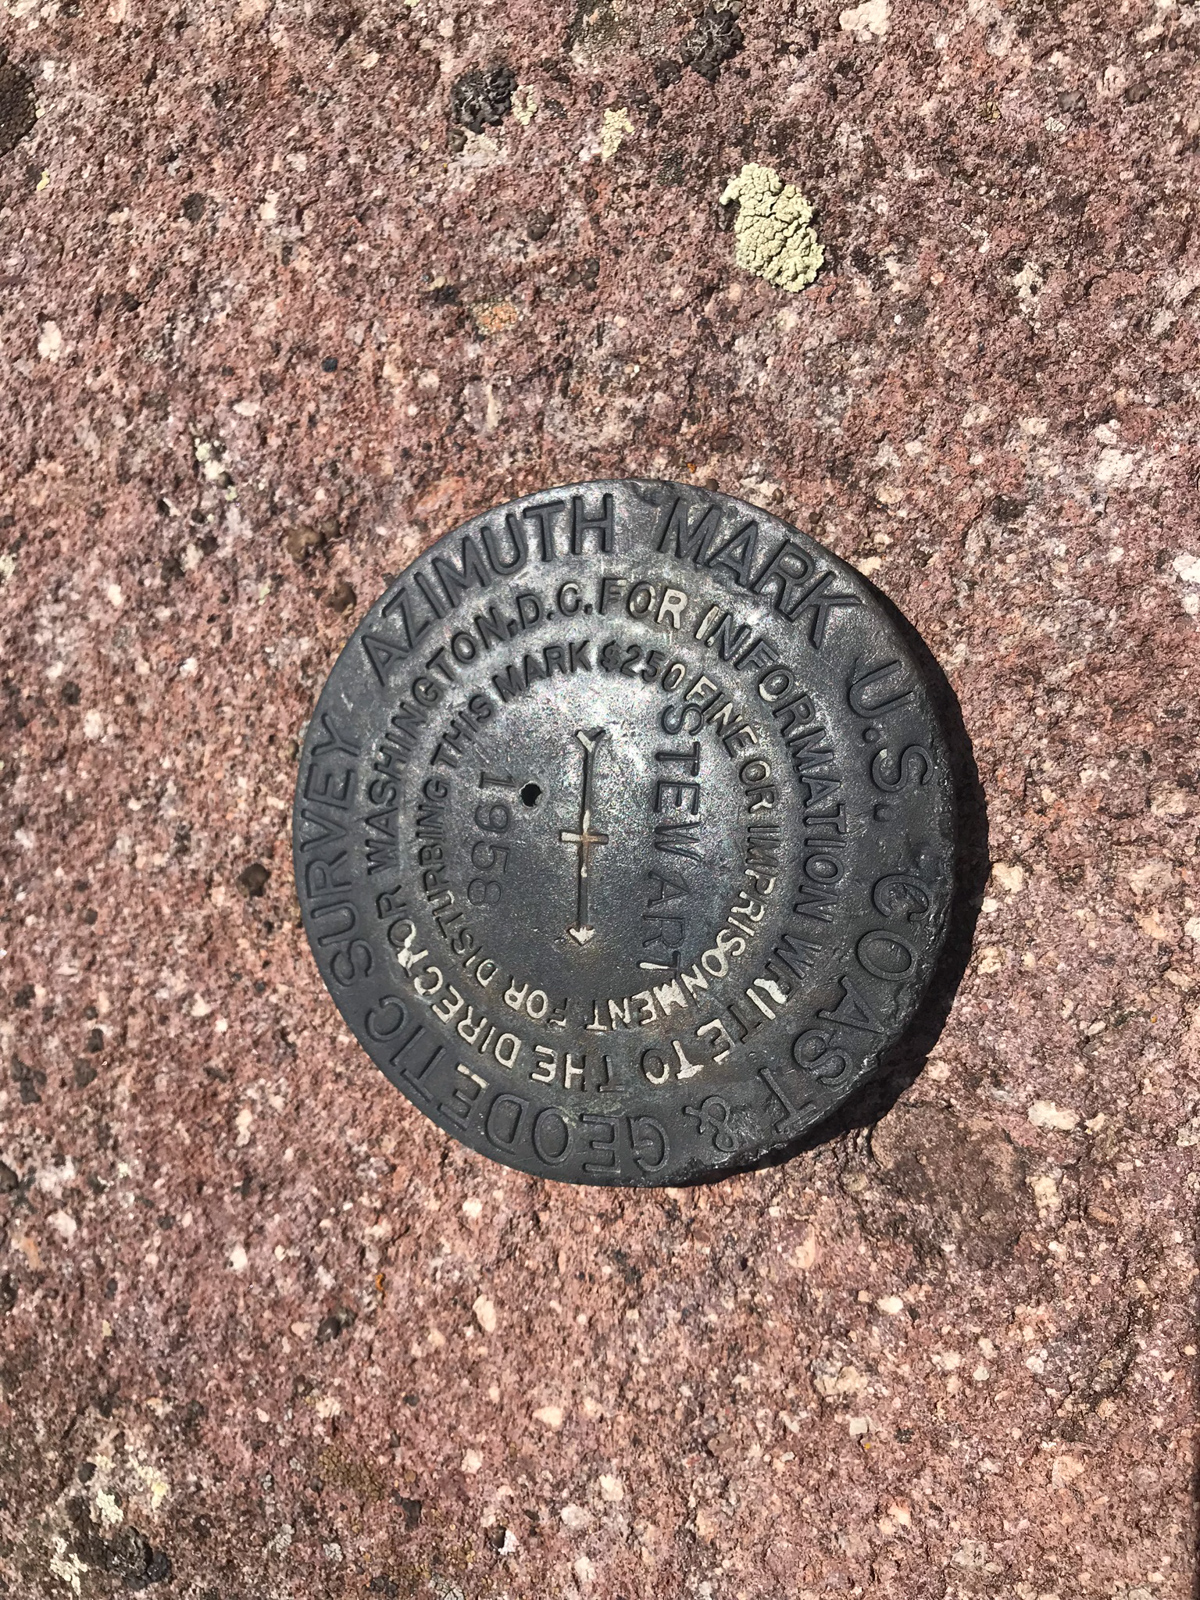 Stewart summit marker